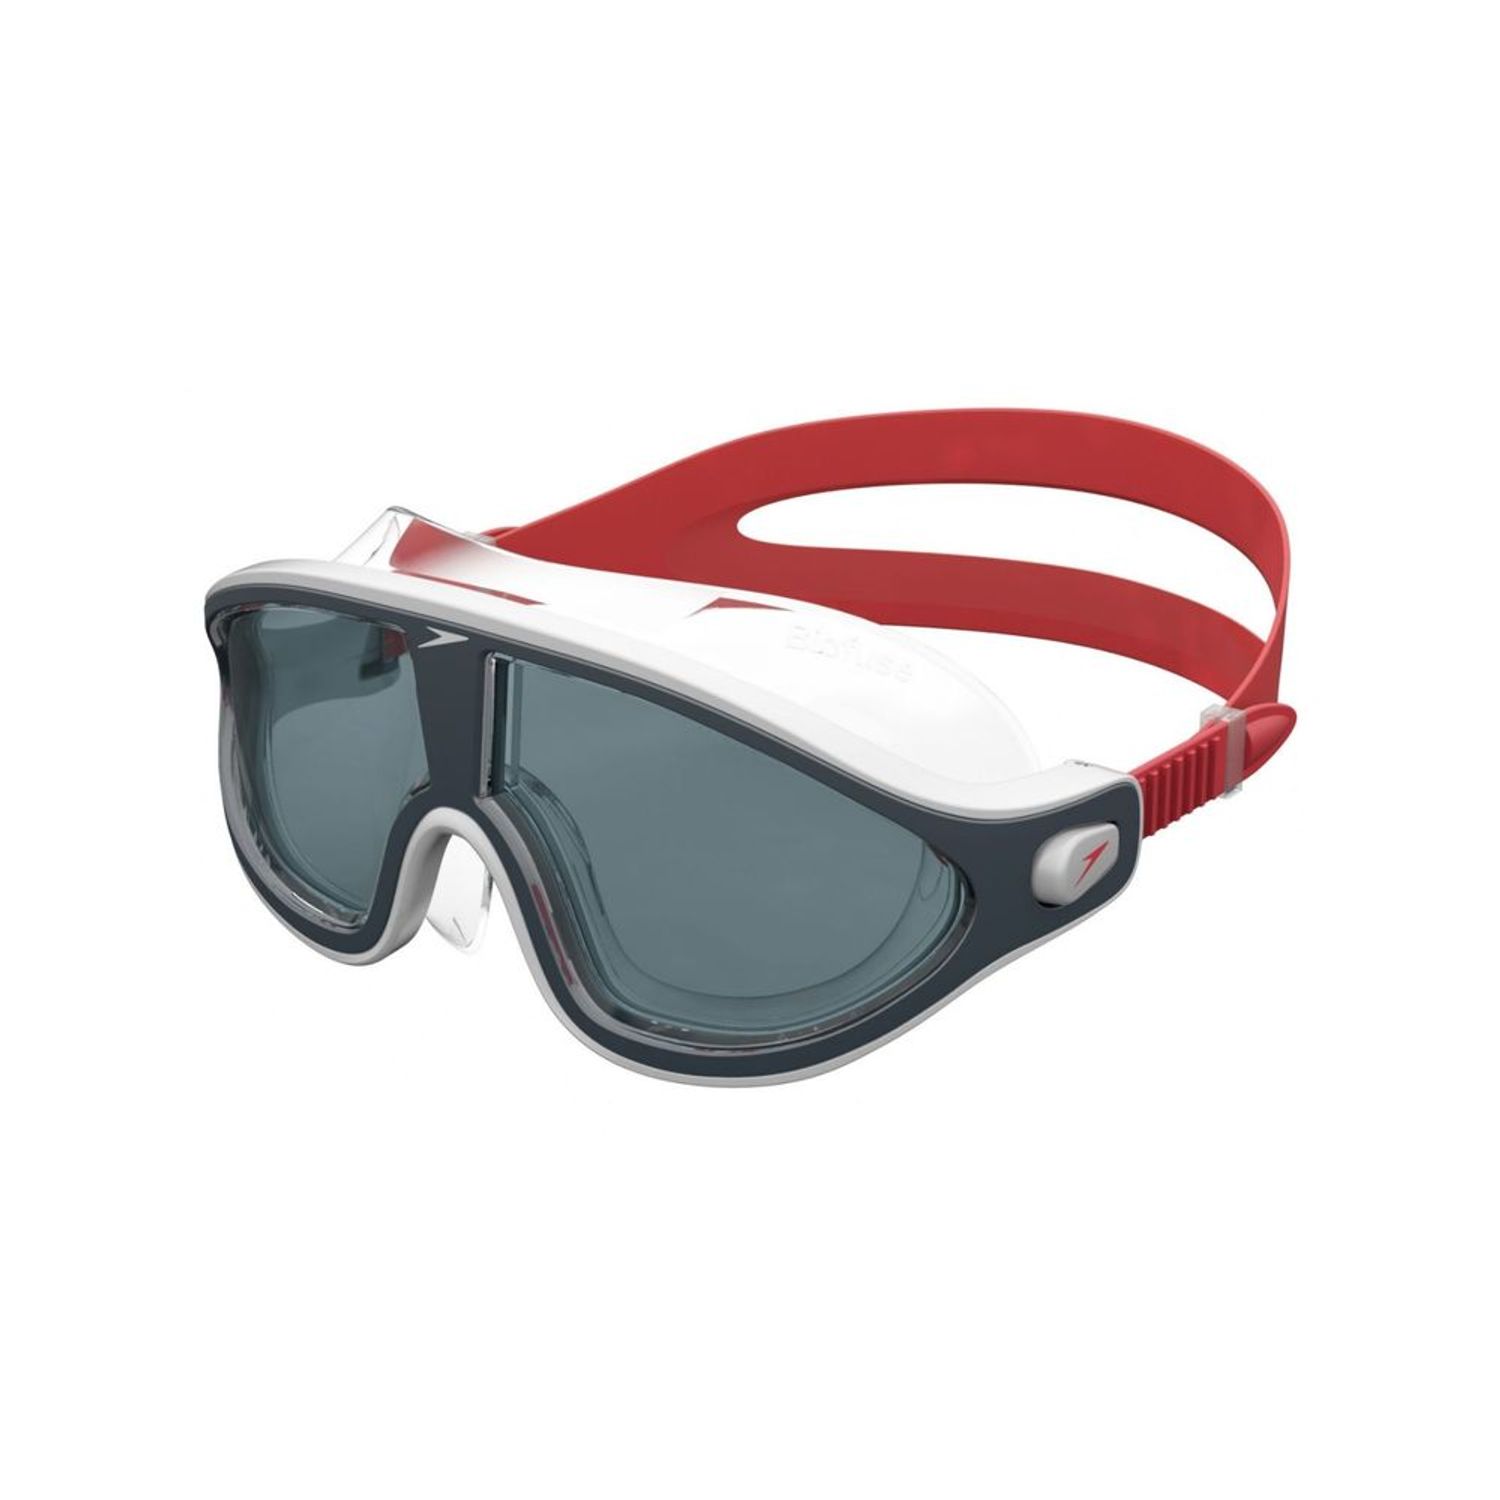 Speedo gafas de natación Biofuse 2.0 en promoción